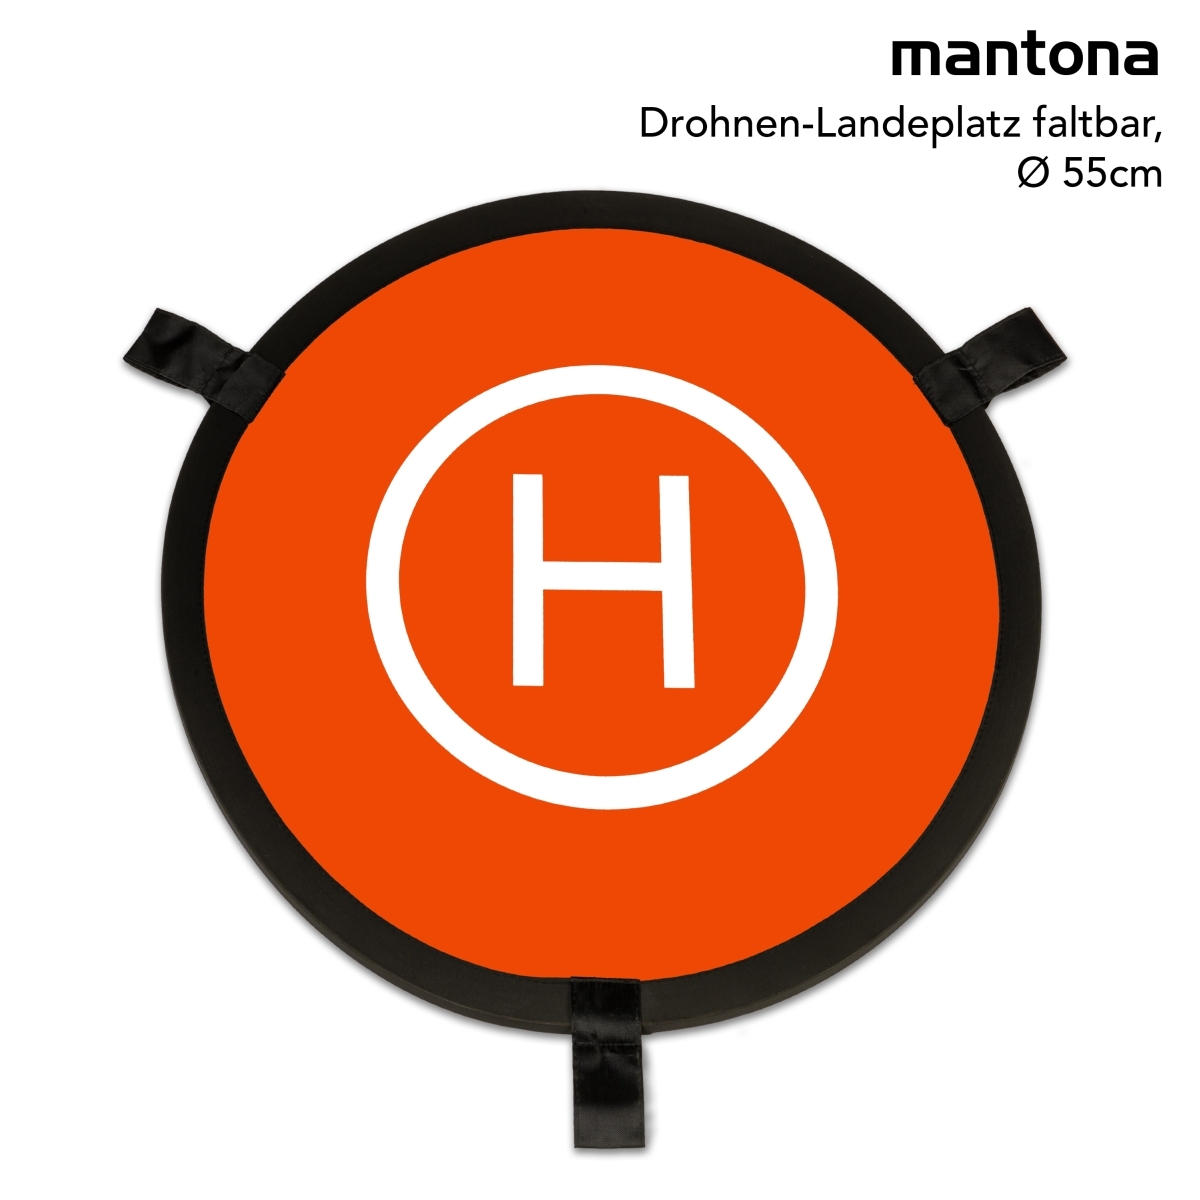 Mantona piste d'atterrissage pour drones pliable, Ø 55cm - walimex /